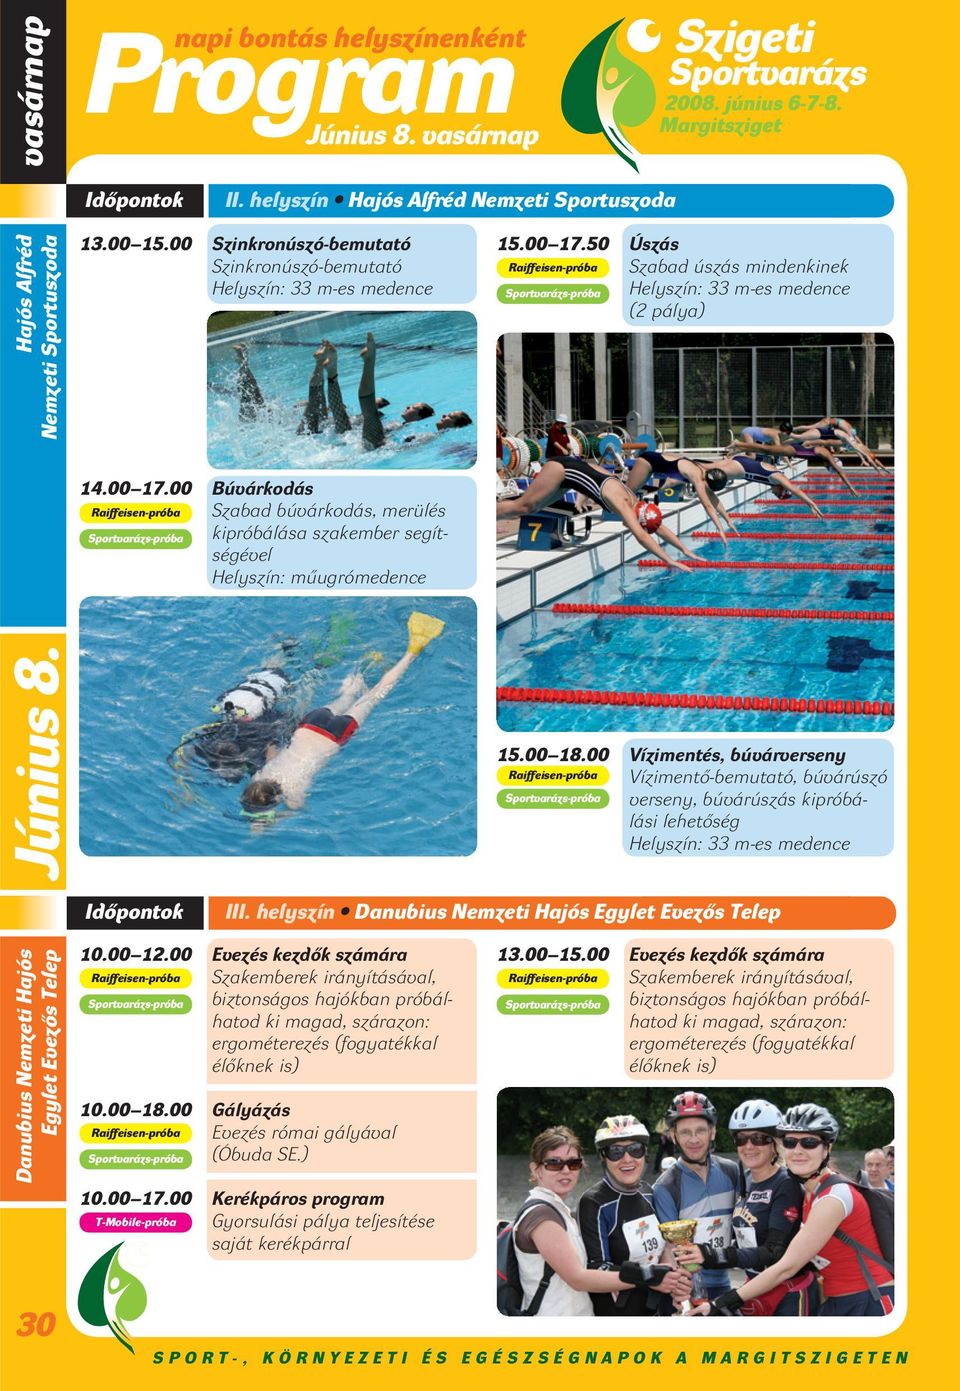 50 Úszás Raiffeisen-próba Szabad úszás mindenkinek Helyszín: 33 m-es medence (2 pálya) 14.00 17.